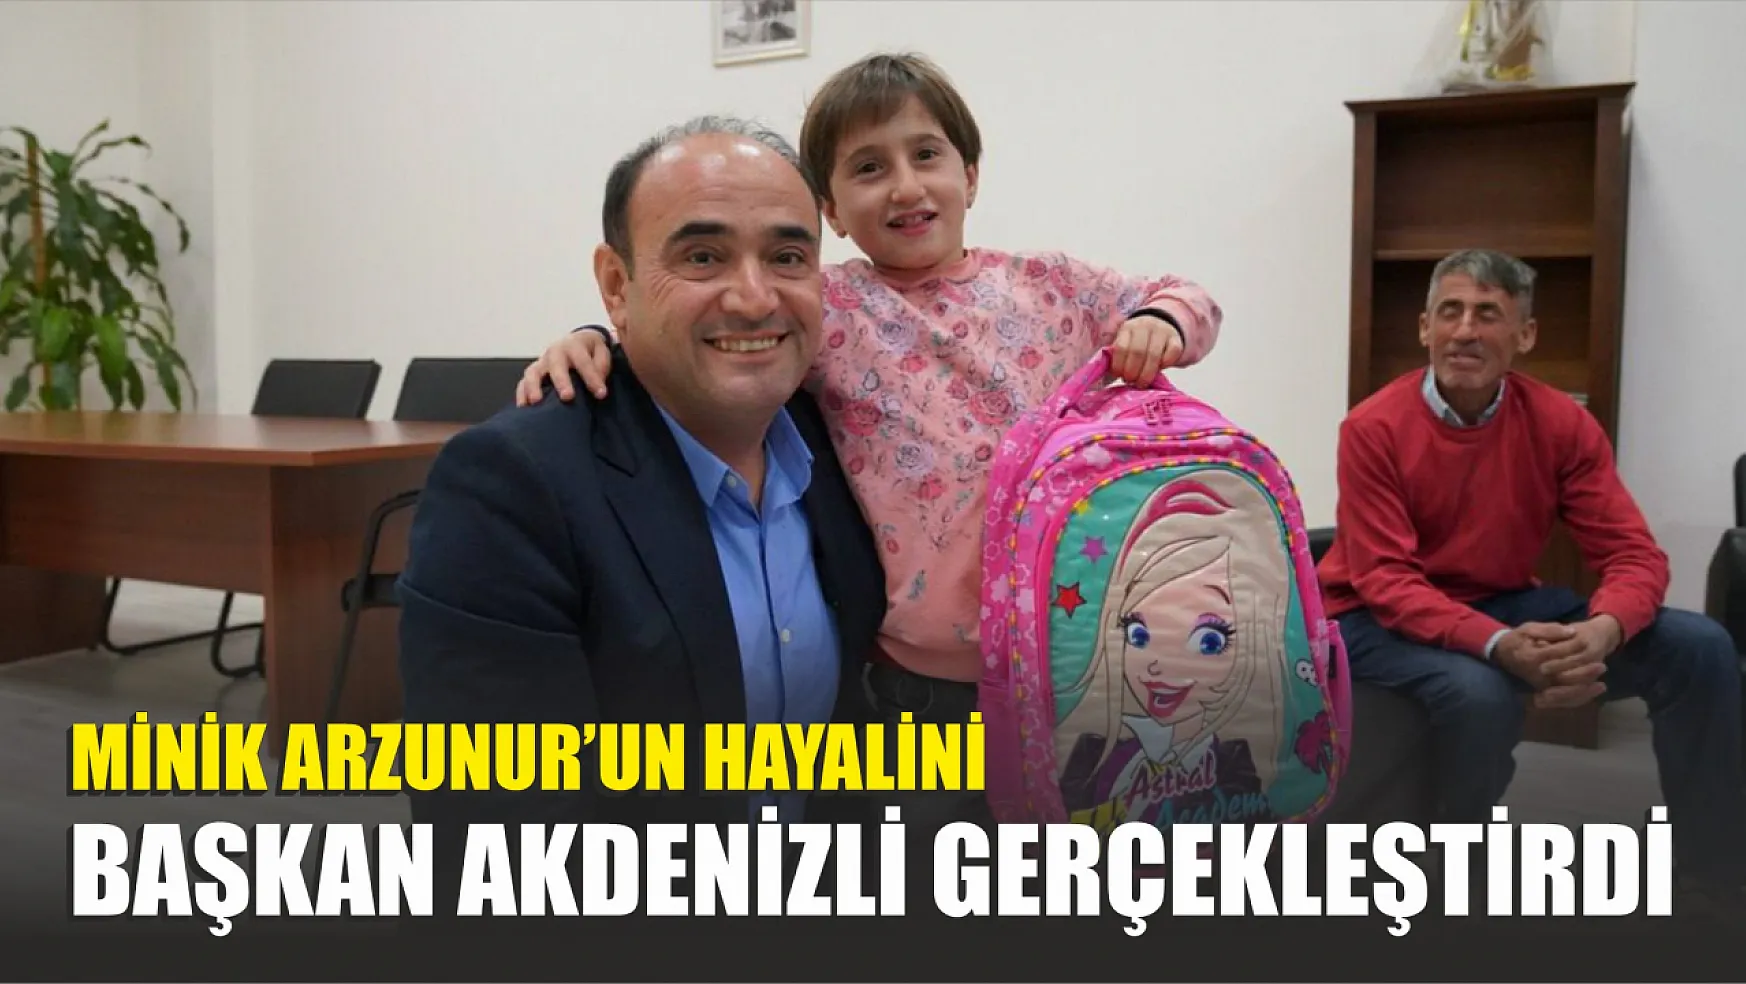 Minik Arzunur'un Hayalini Başkan Akdenizli Gerçekleştirdi